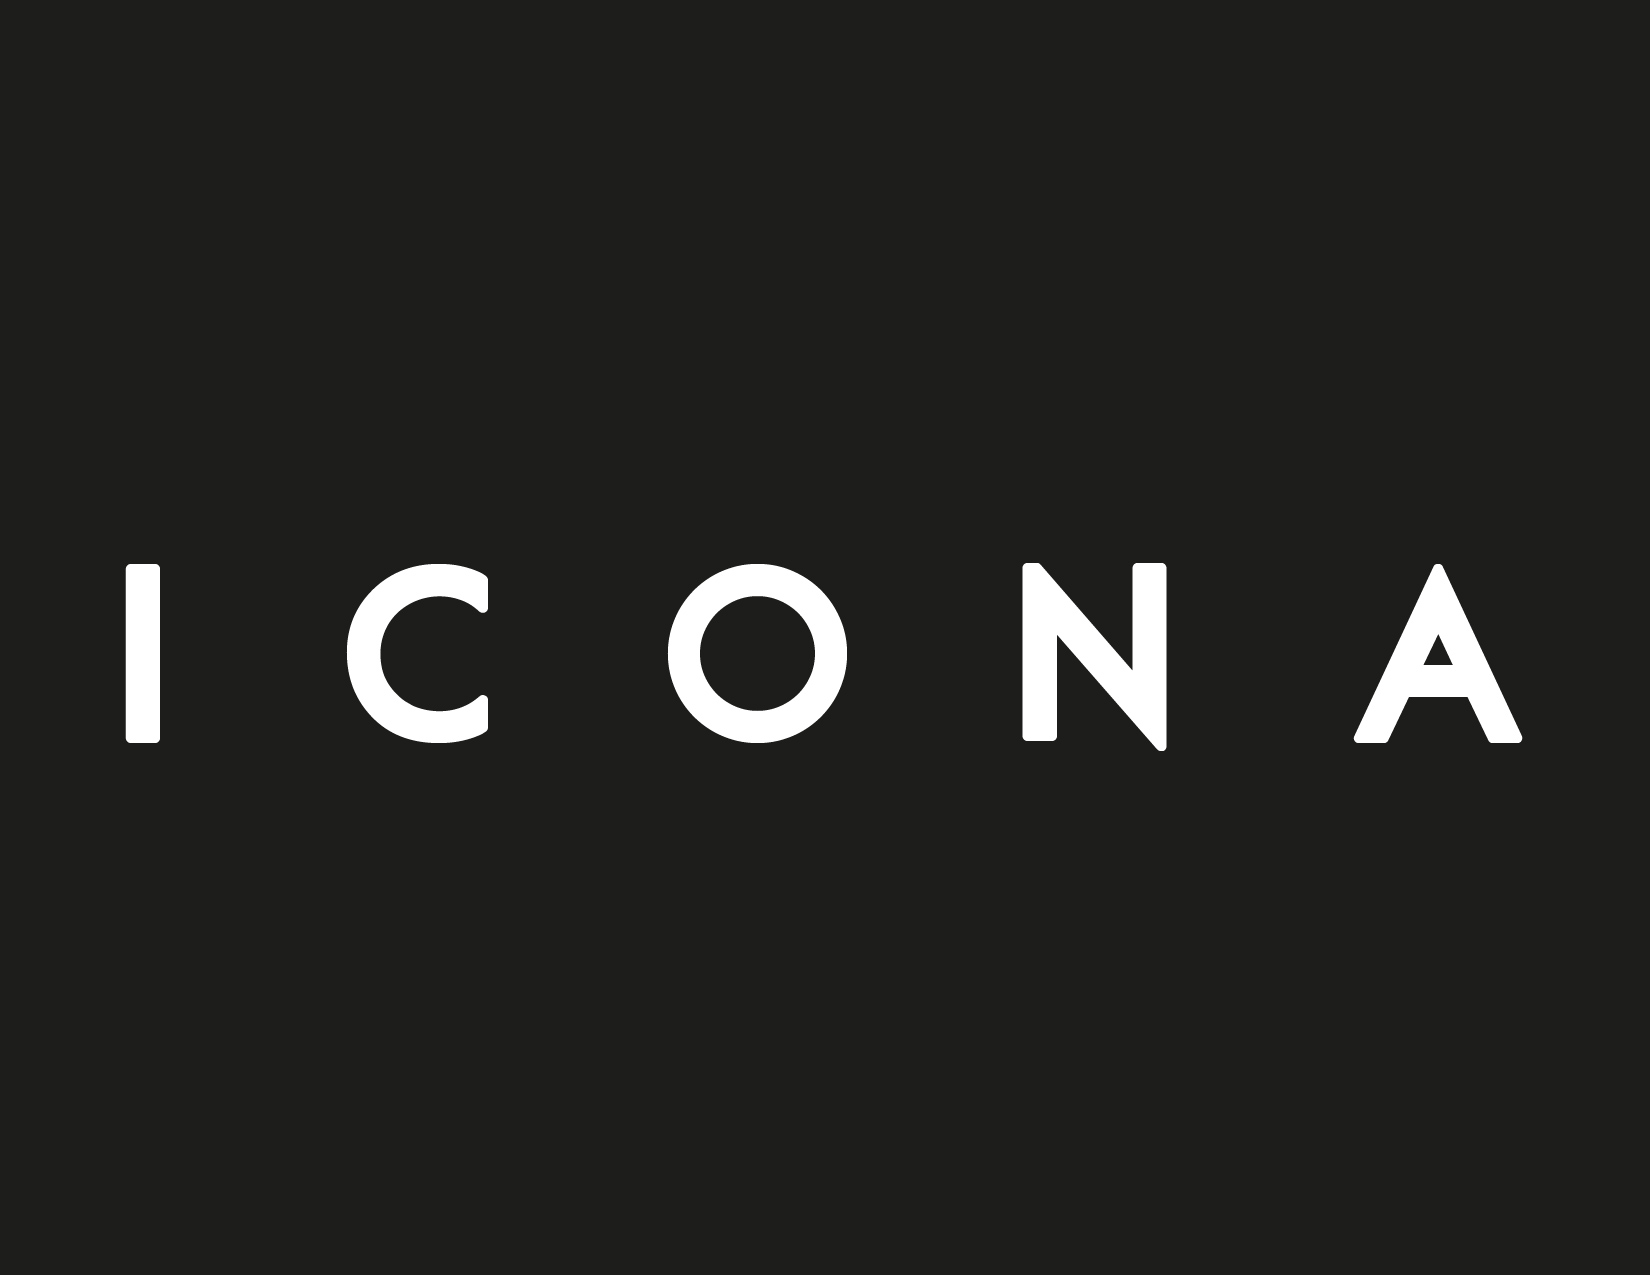 ICONA-02.jpg